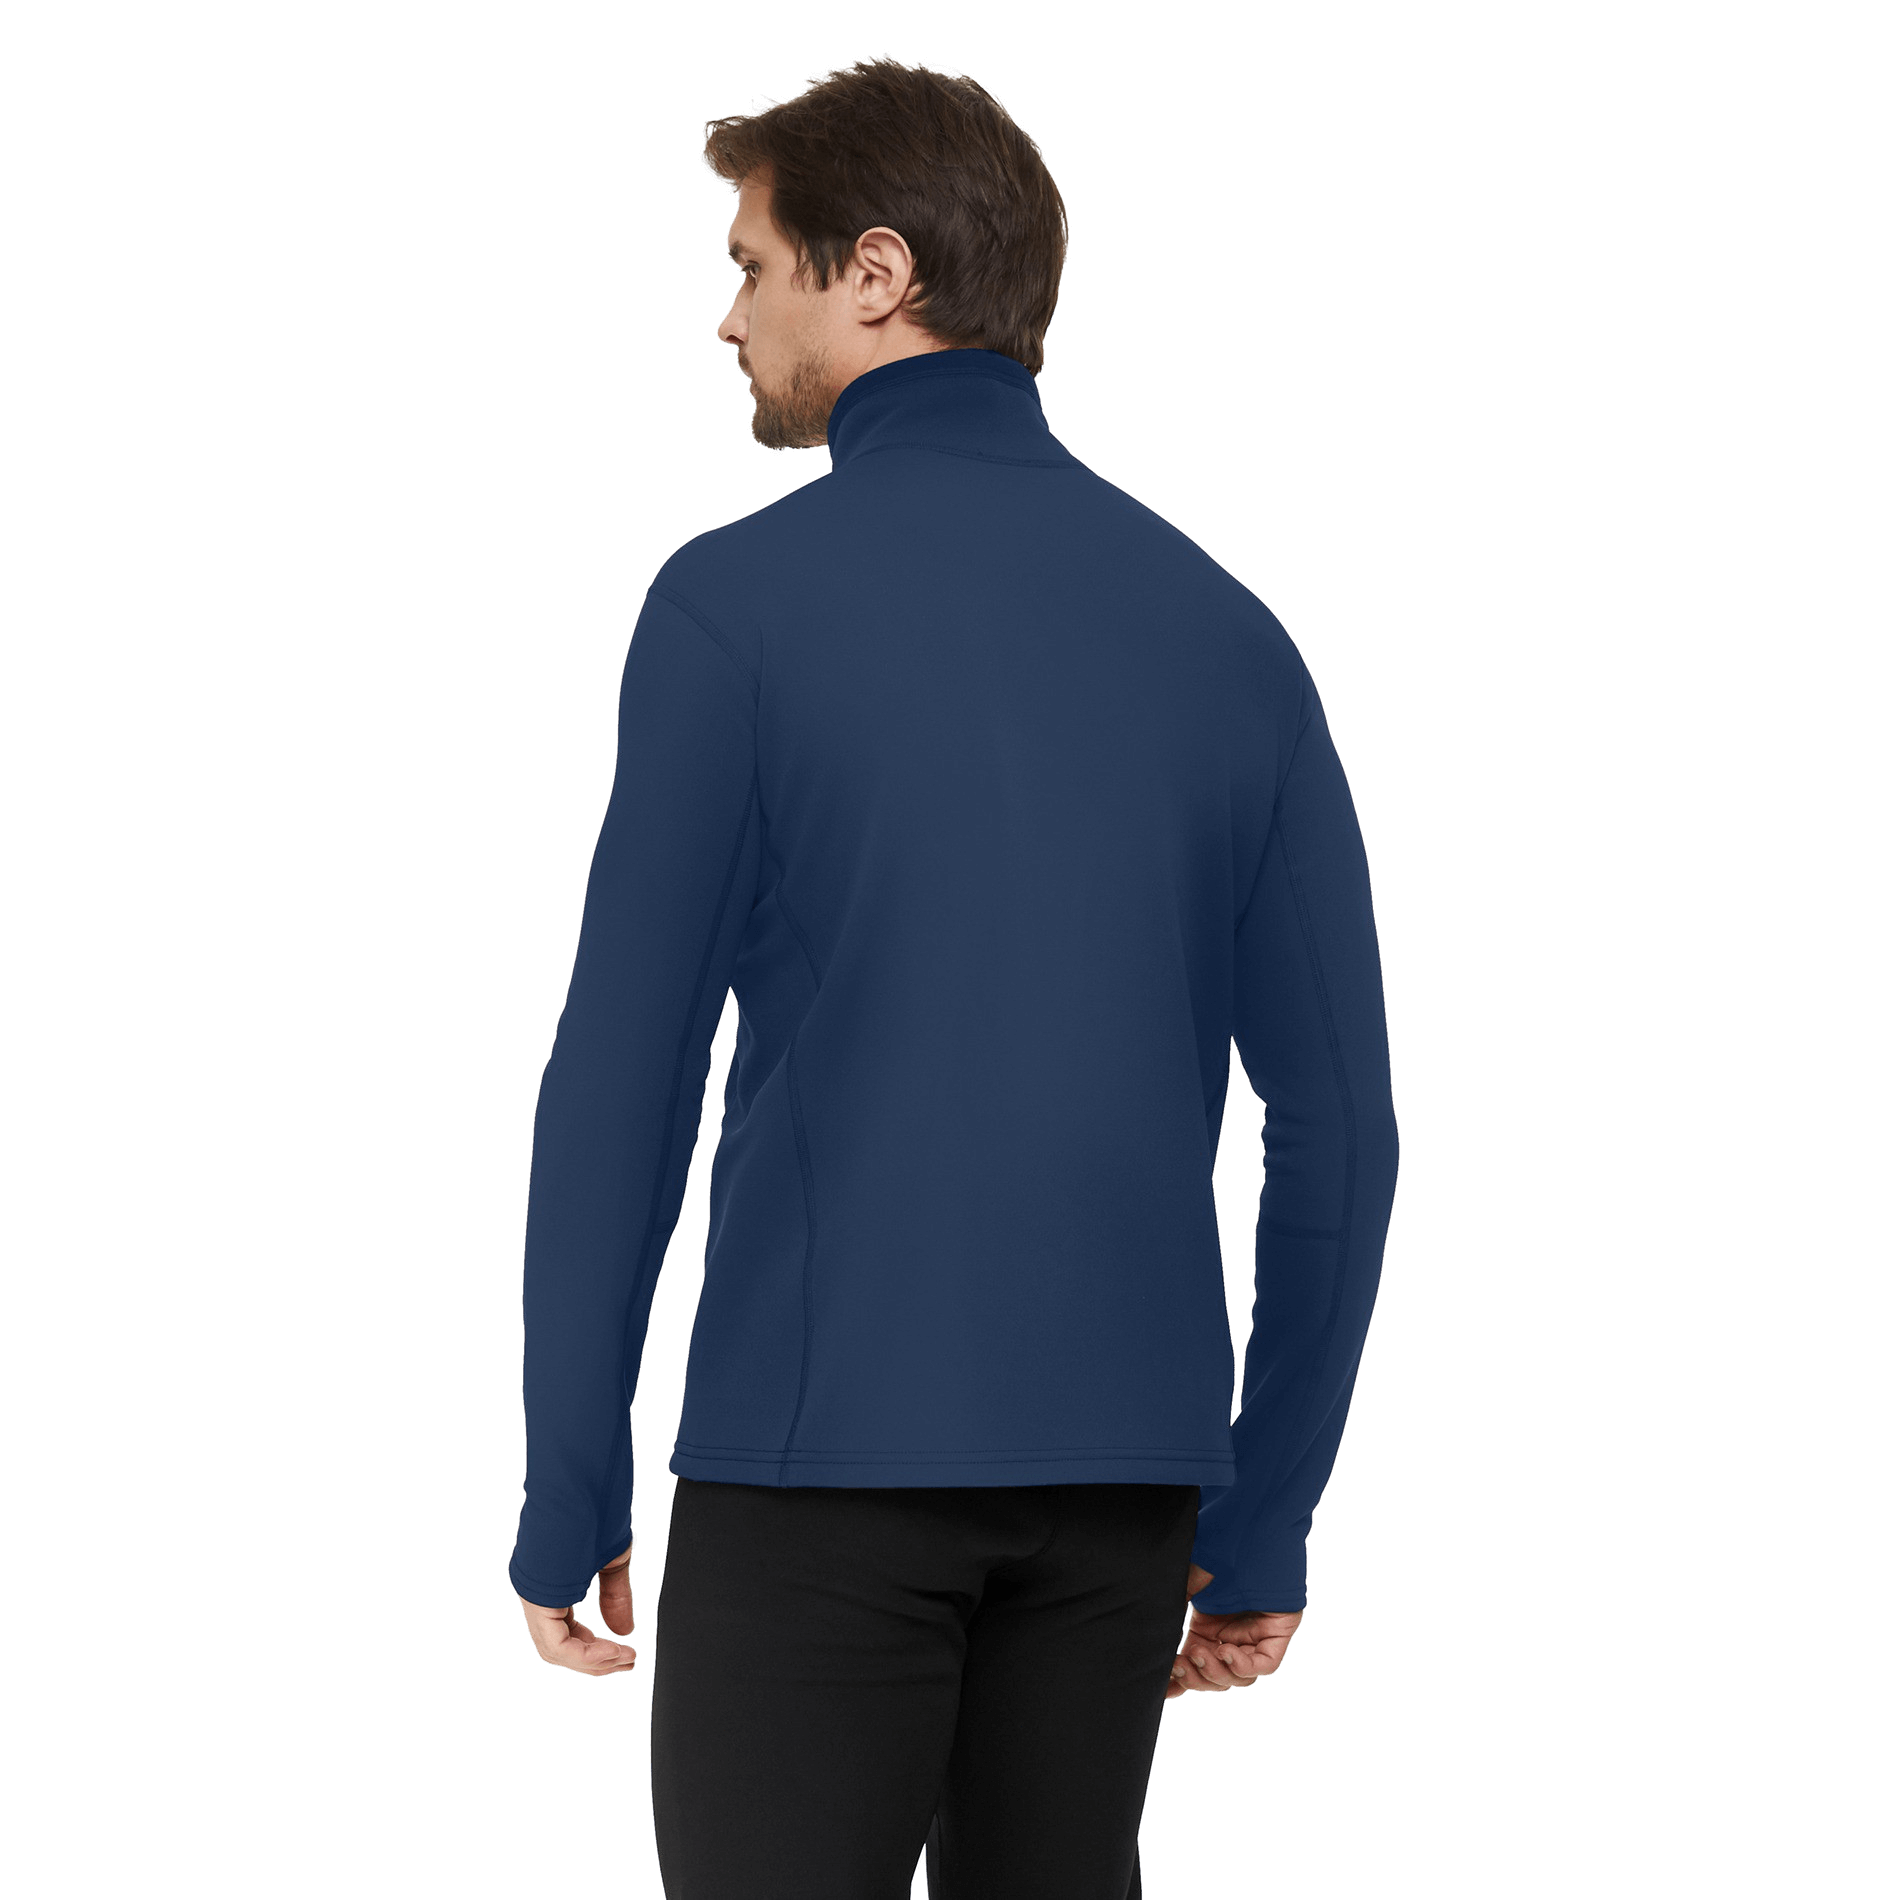 Куртка BASK, размер 54, цвет колониальный синий 1453V2-9378-054 Richmond jkt v2 - фото 2